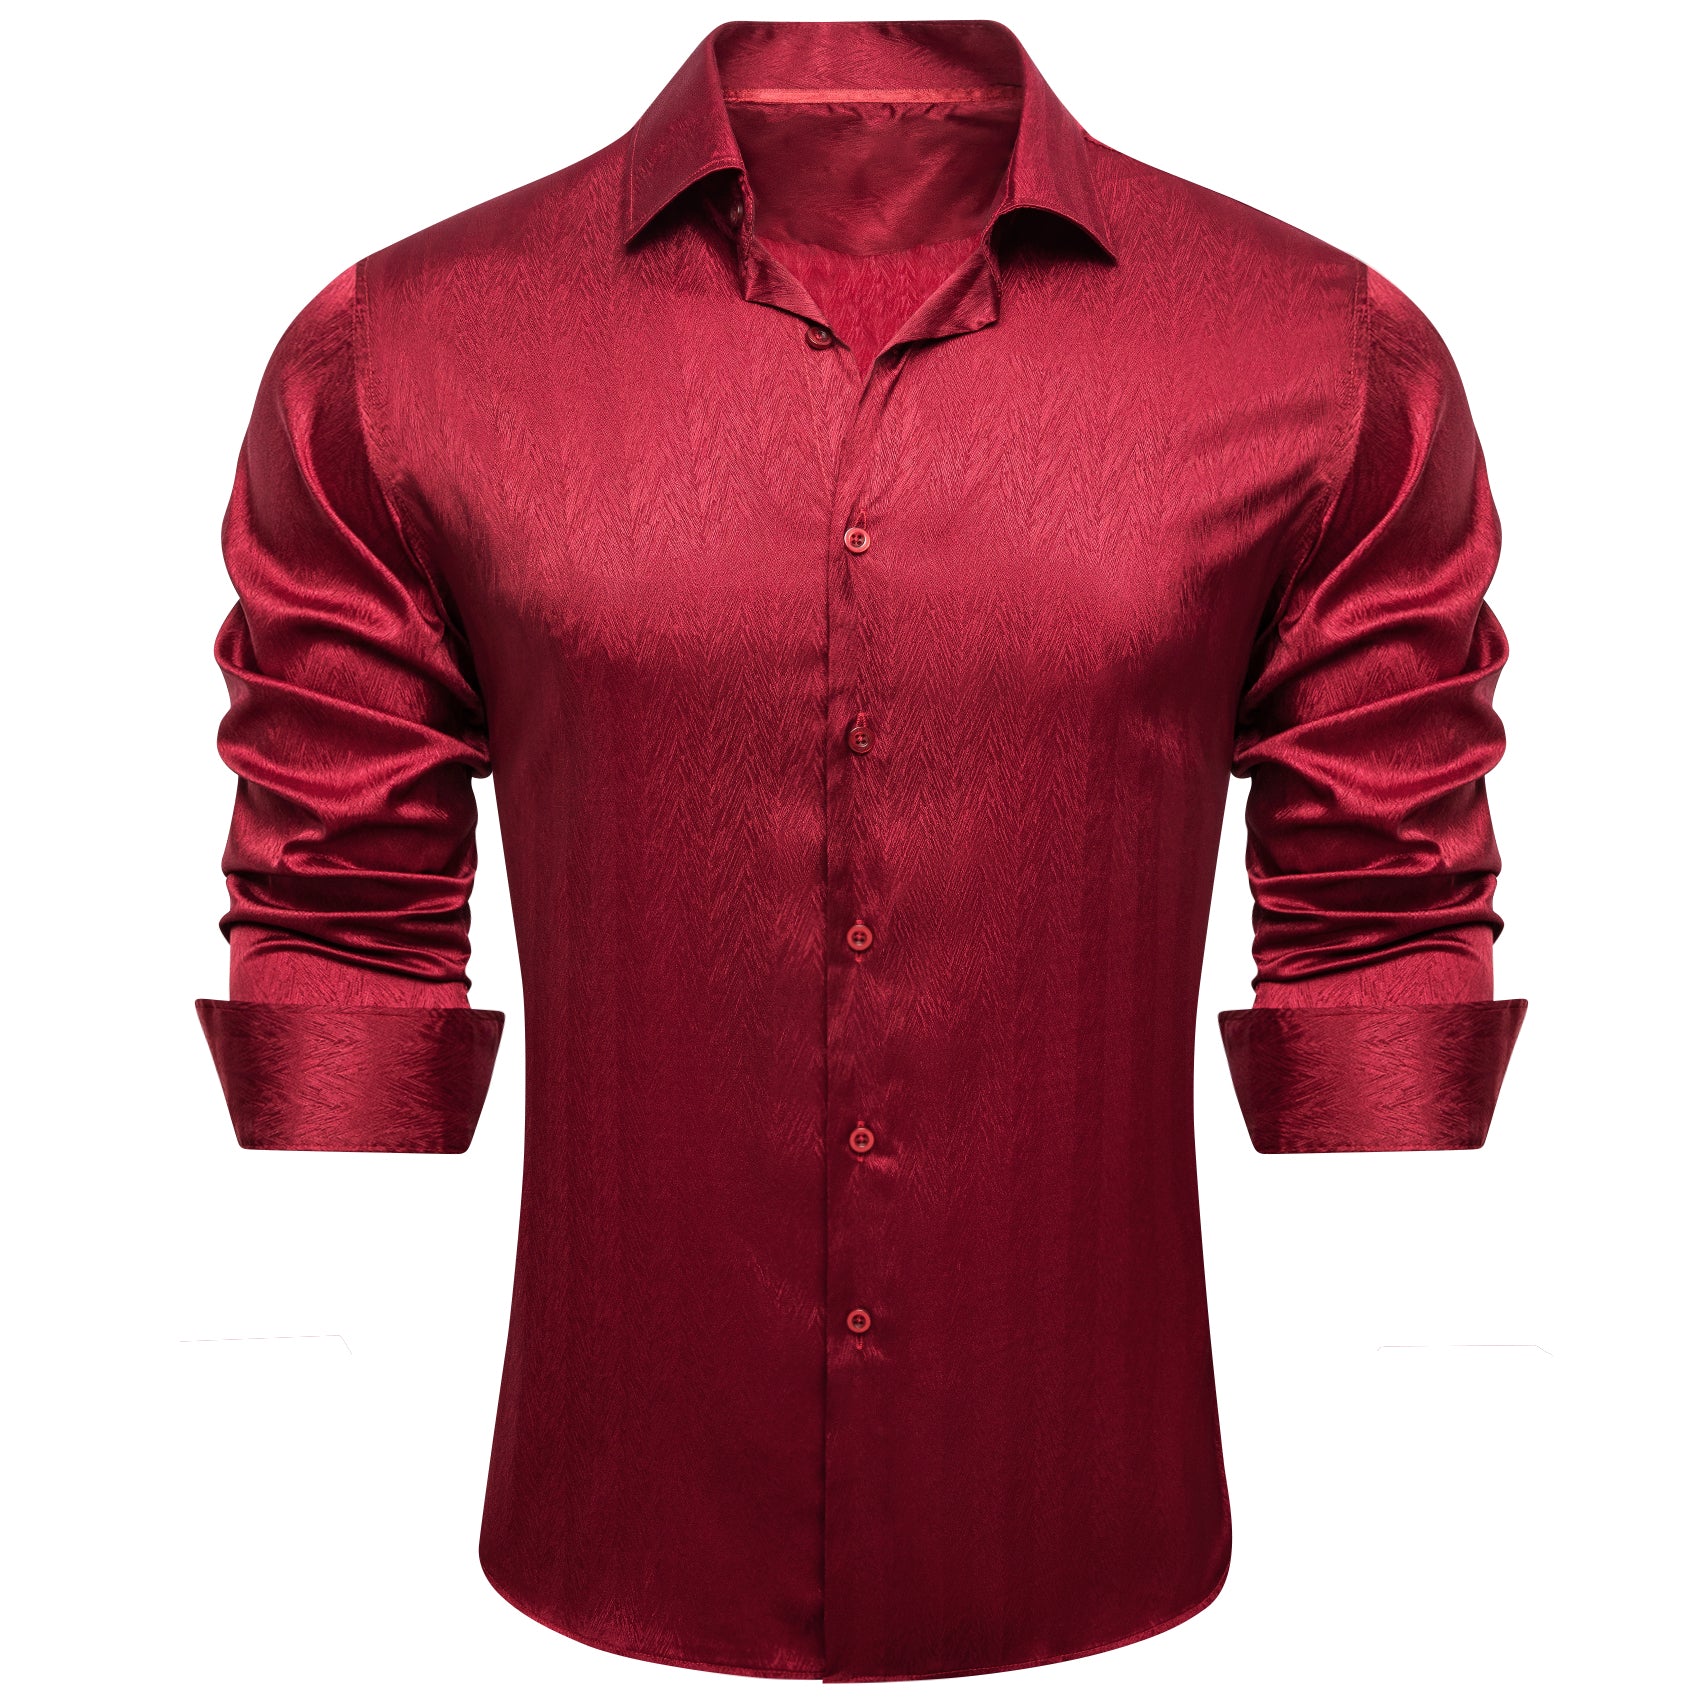 Barry.wang Dark Red Solid Silk Men's Shirt